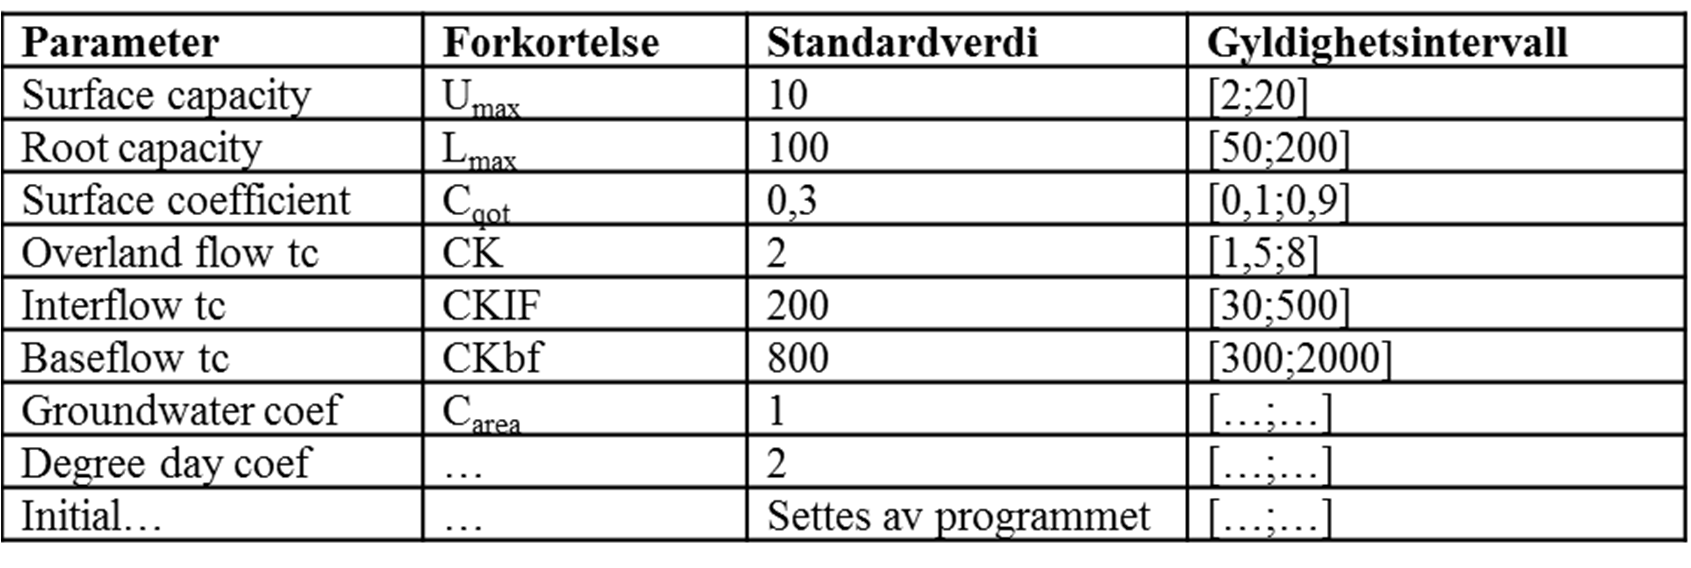 Kalibrering av parametere (standarder og